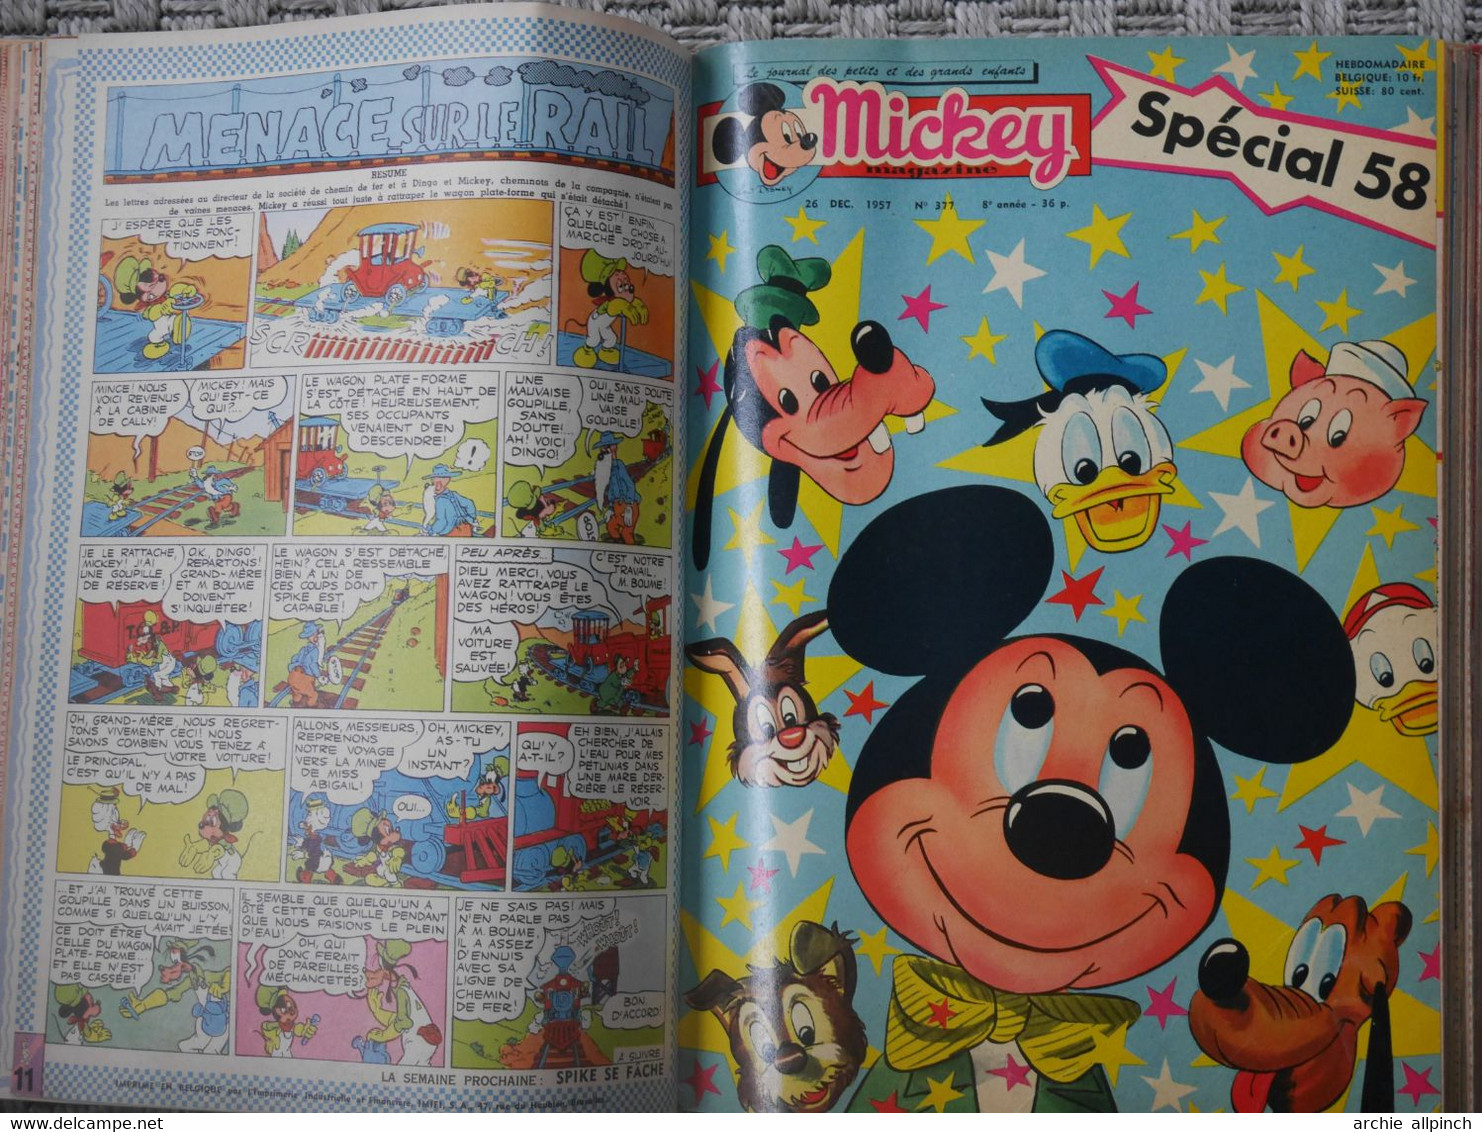 Mickey magazine, album semestriel n° 15, 1957 - 1958